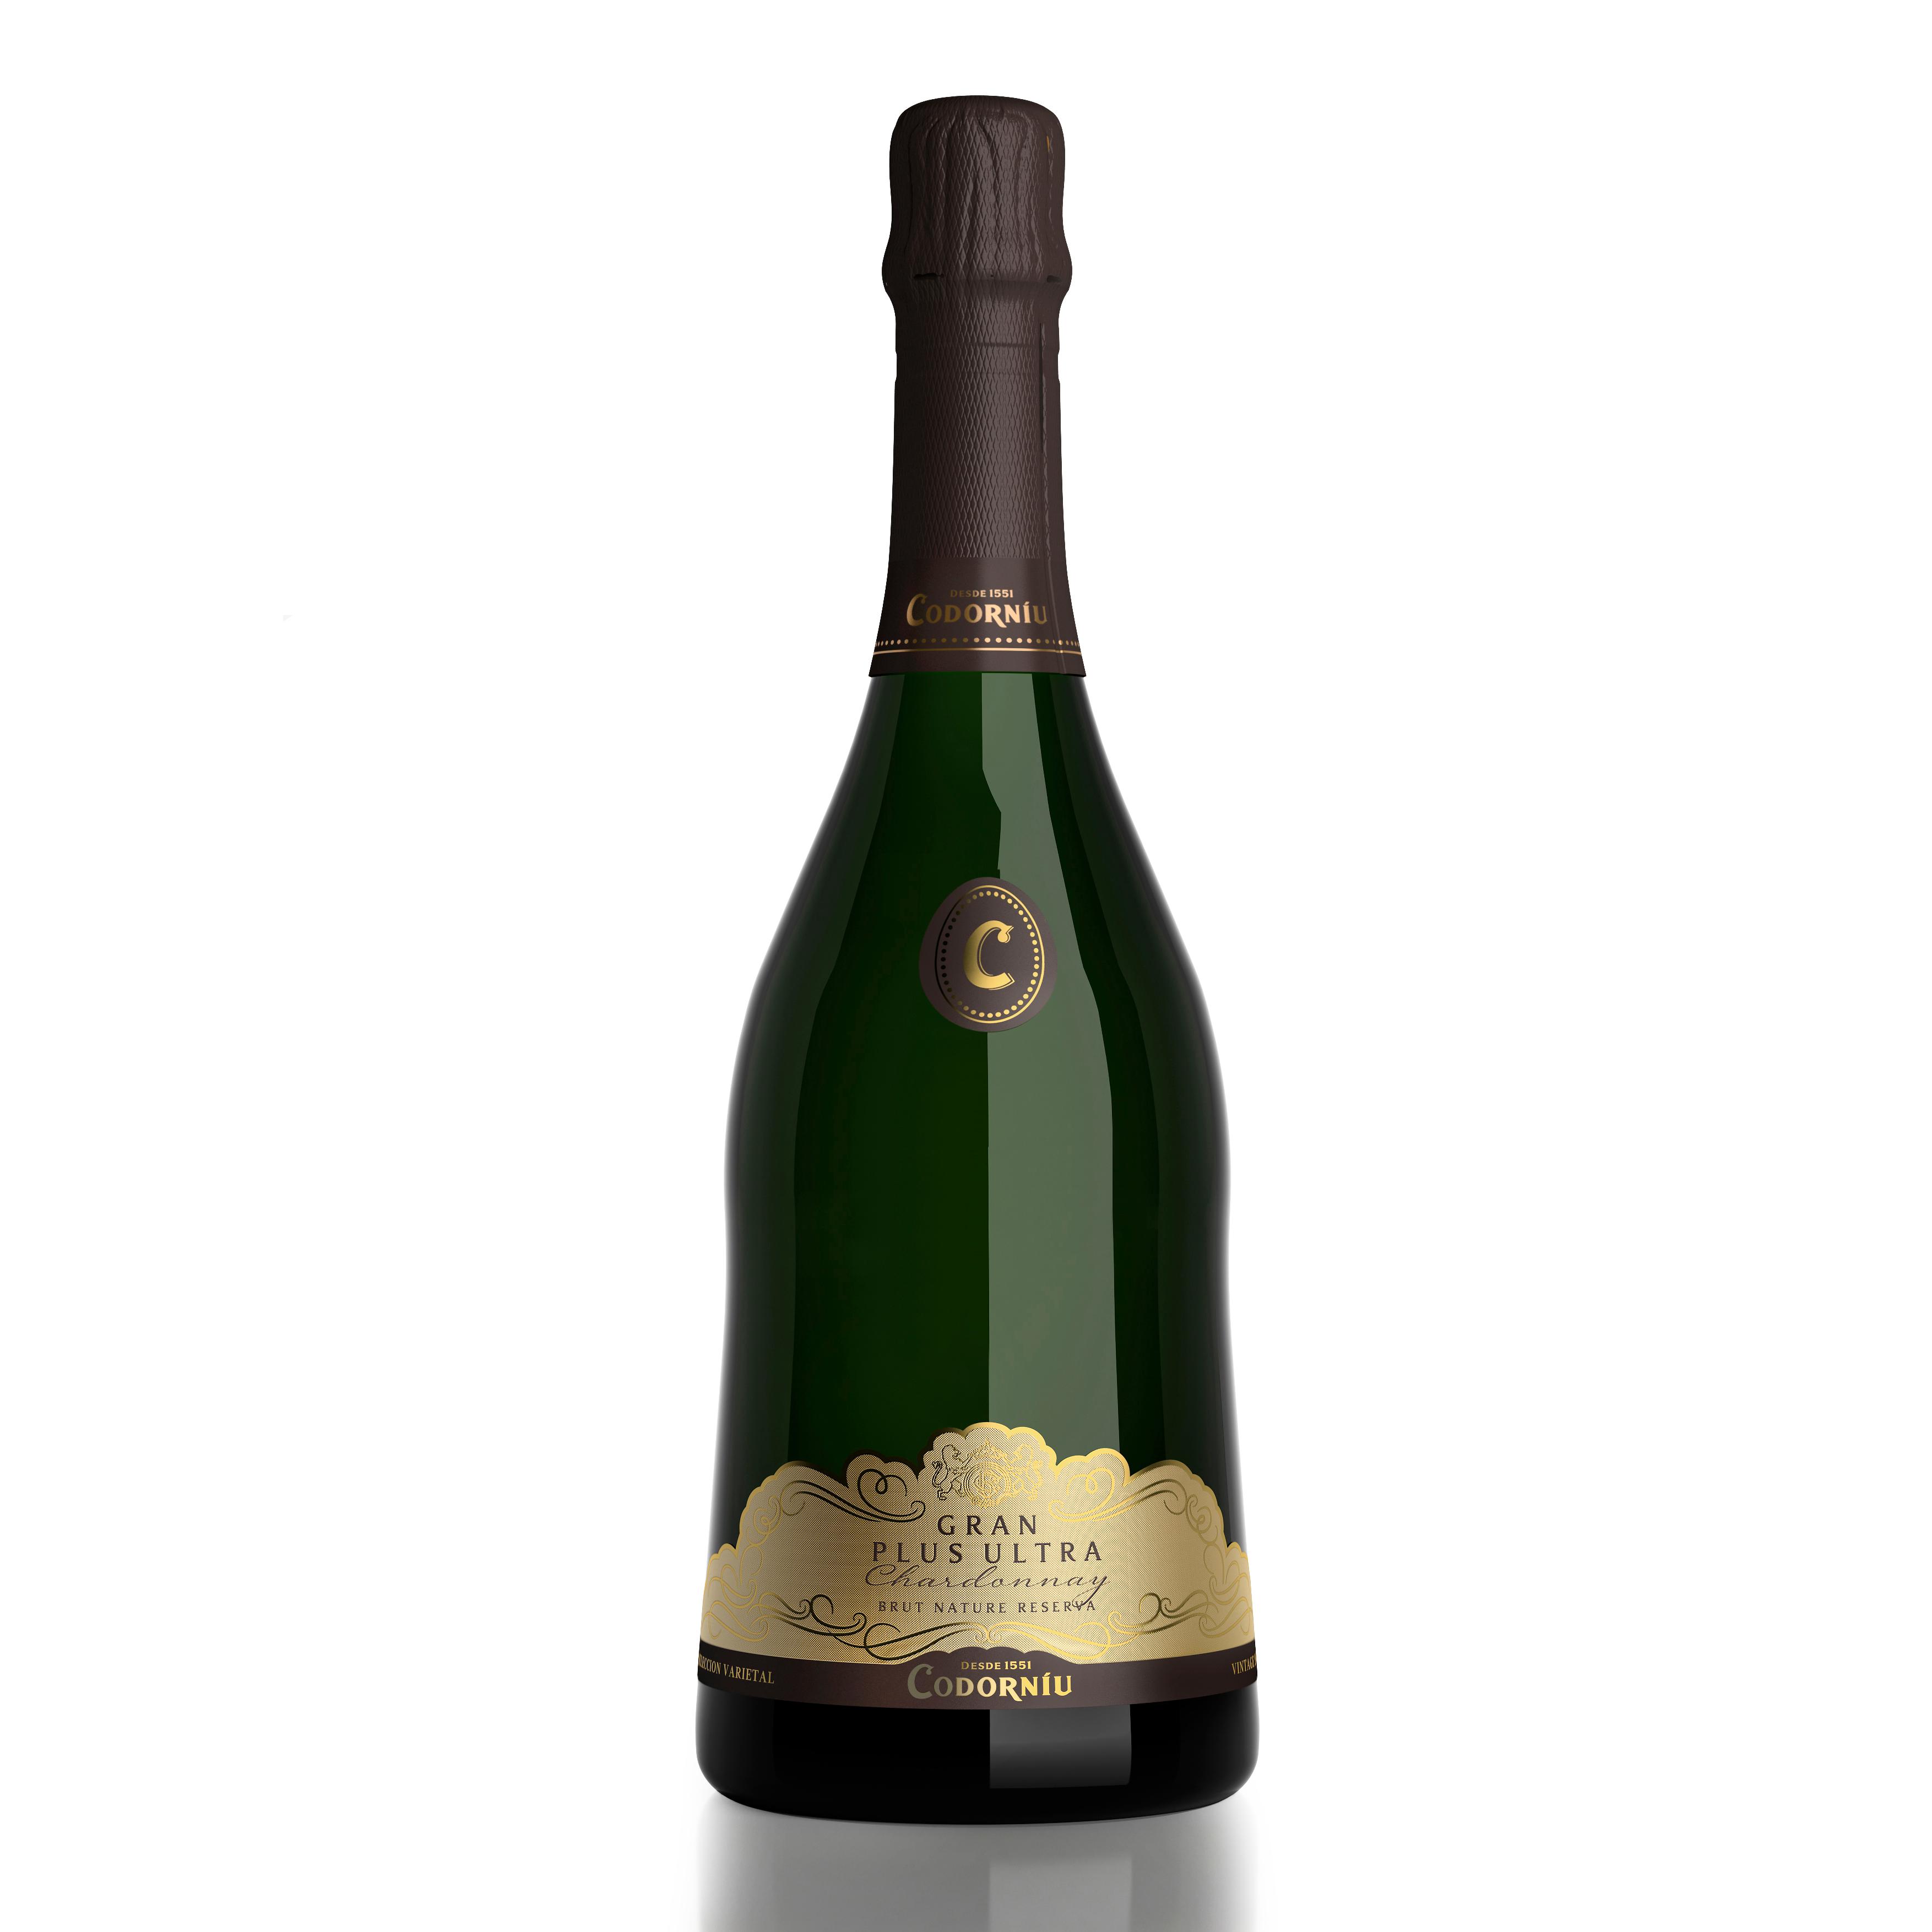 Codorniu - Codorníu Gran Plus Ultra - Cava Brut Nature, 100% Chardonnay - 75cl